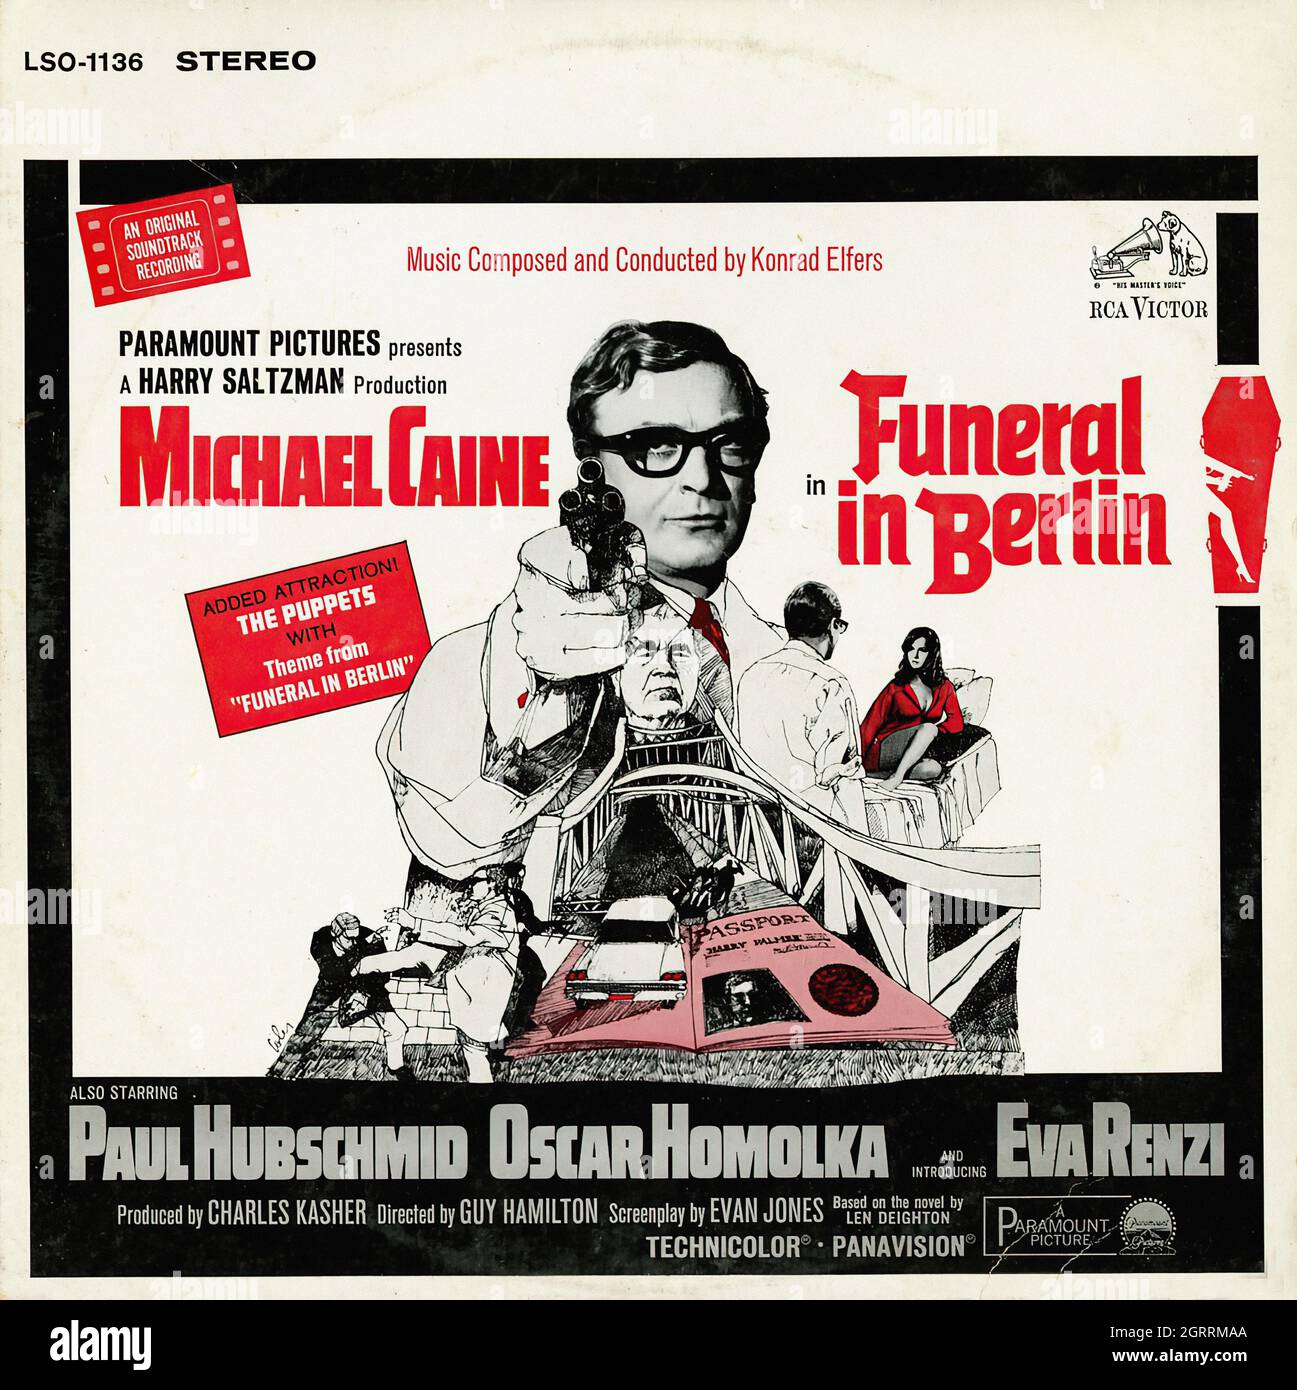 Funeral In Berlin -  Vintage Soundtrack Vinyl Album Stock Photo